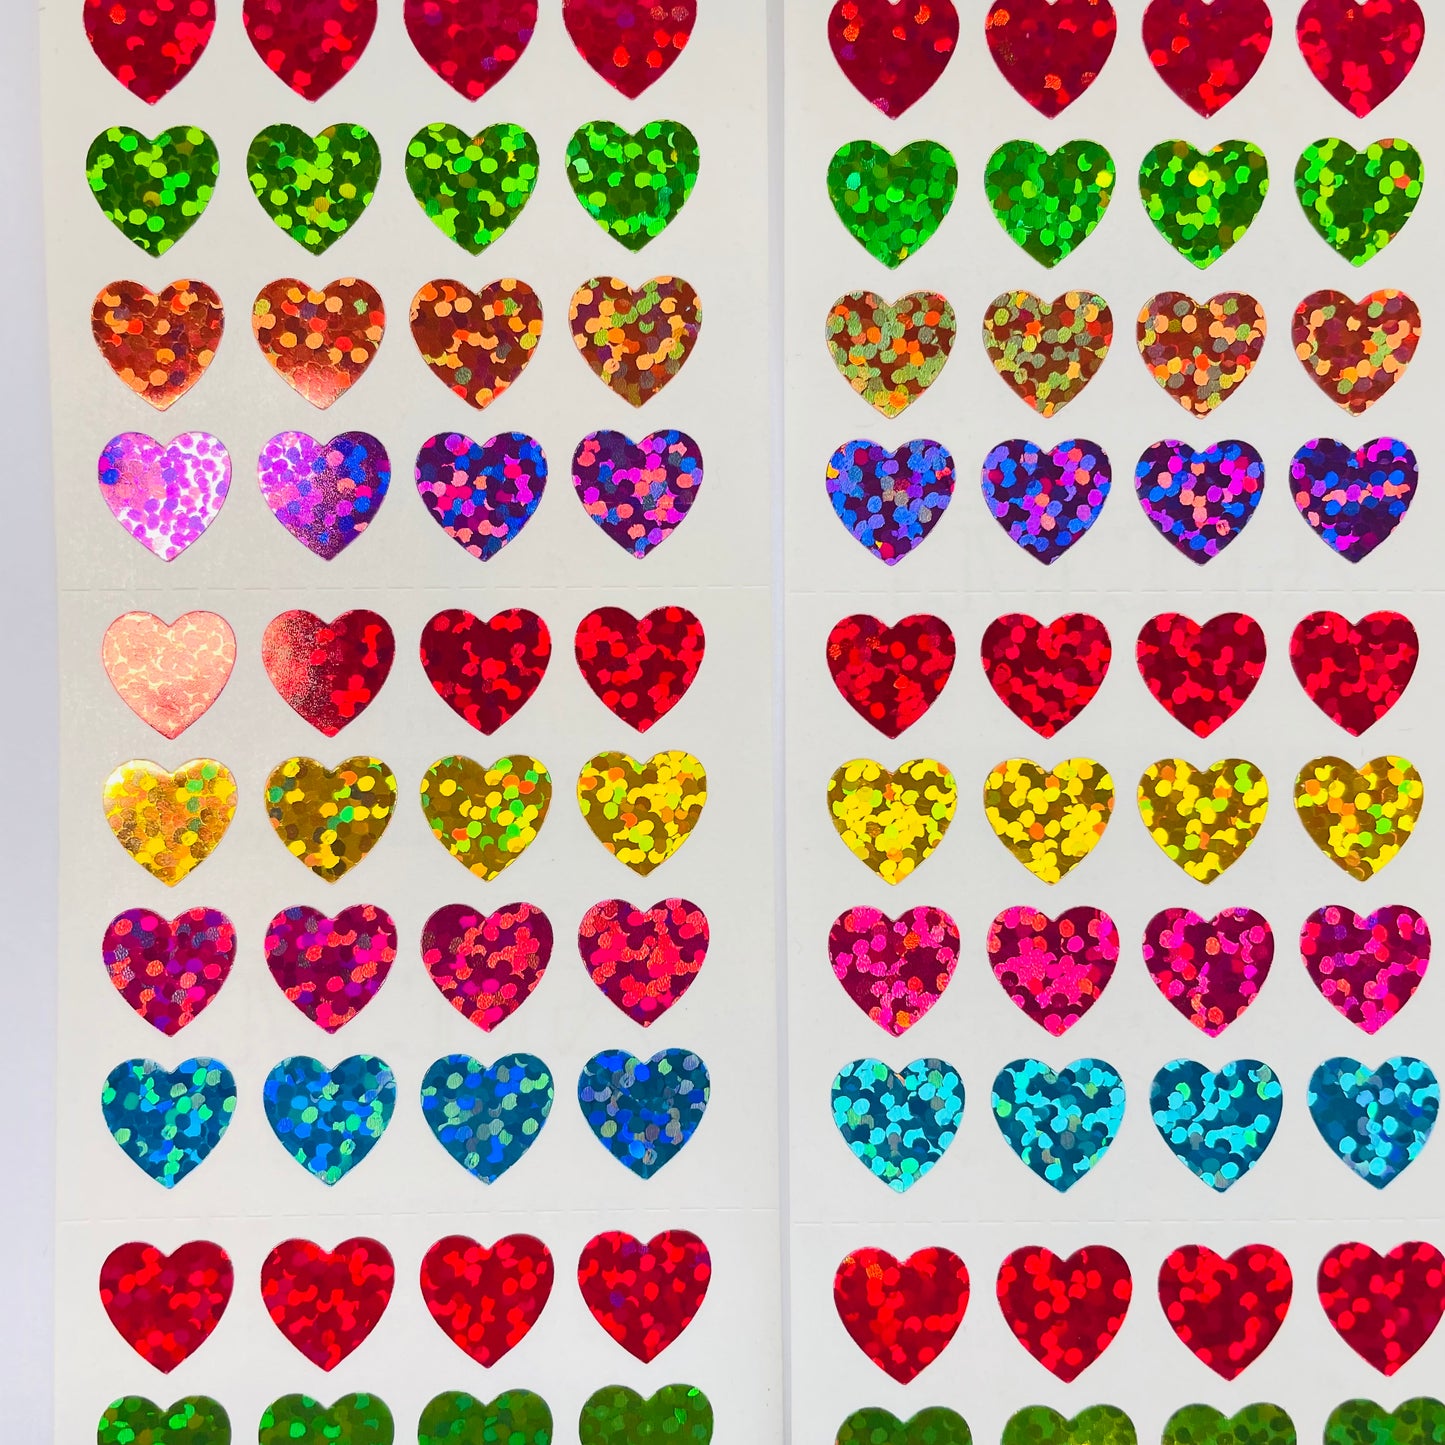 HAMBLY: Micro Multicolor Hearts glitter stickers